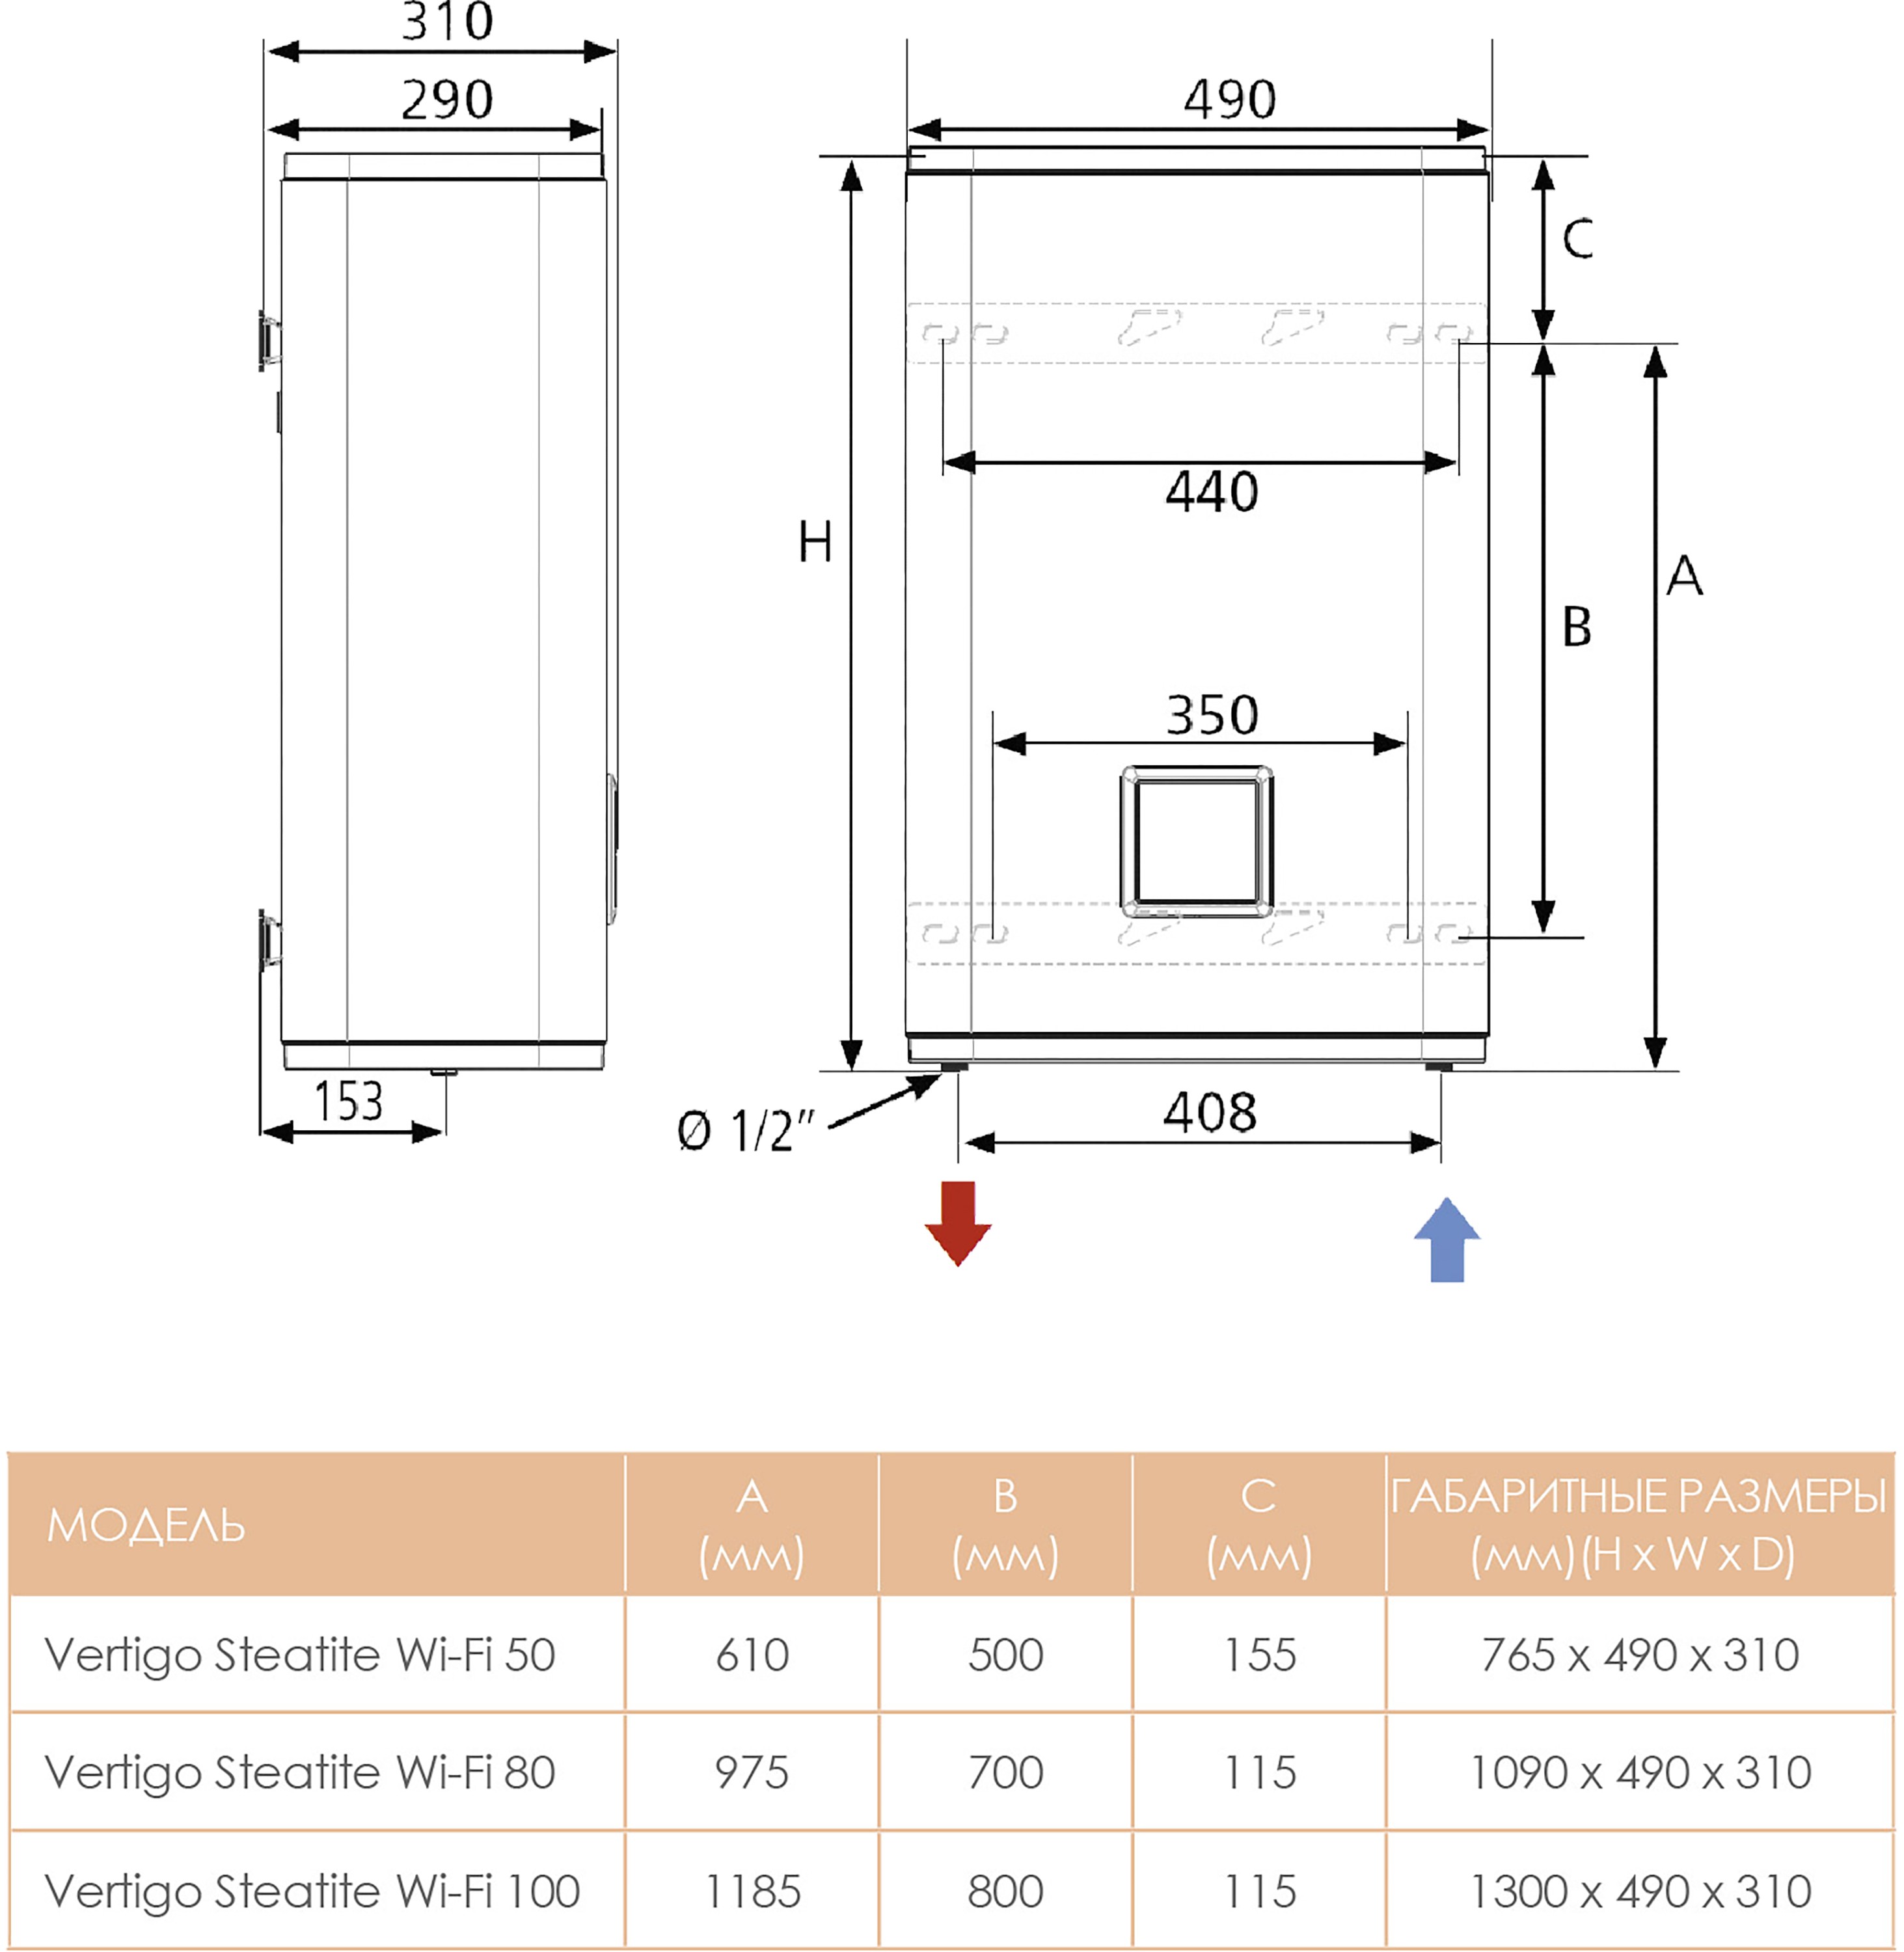 Бойлер Atlantic Vertigo Steatite WI-FI 100 MP 080 F220-2-CE-CC-W отзывы - изображения 5